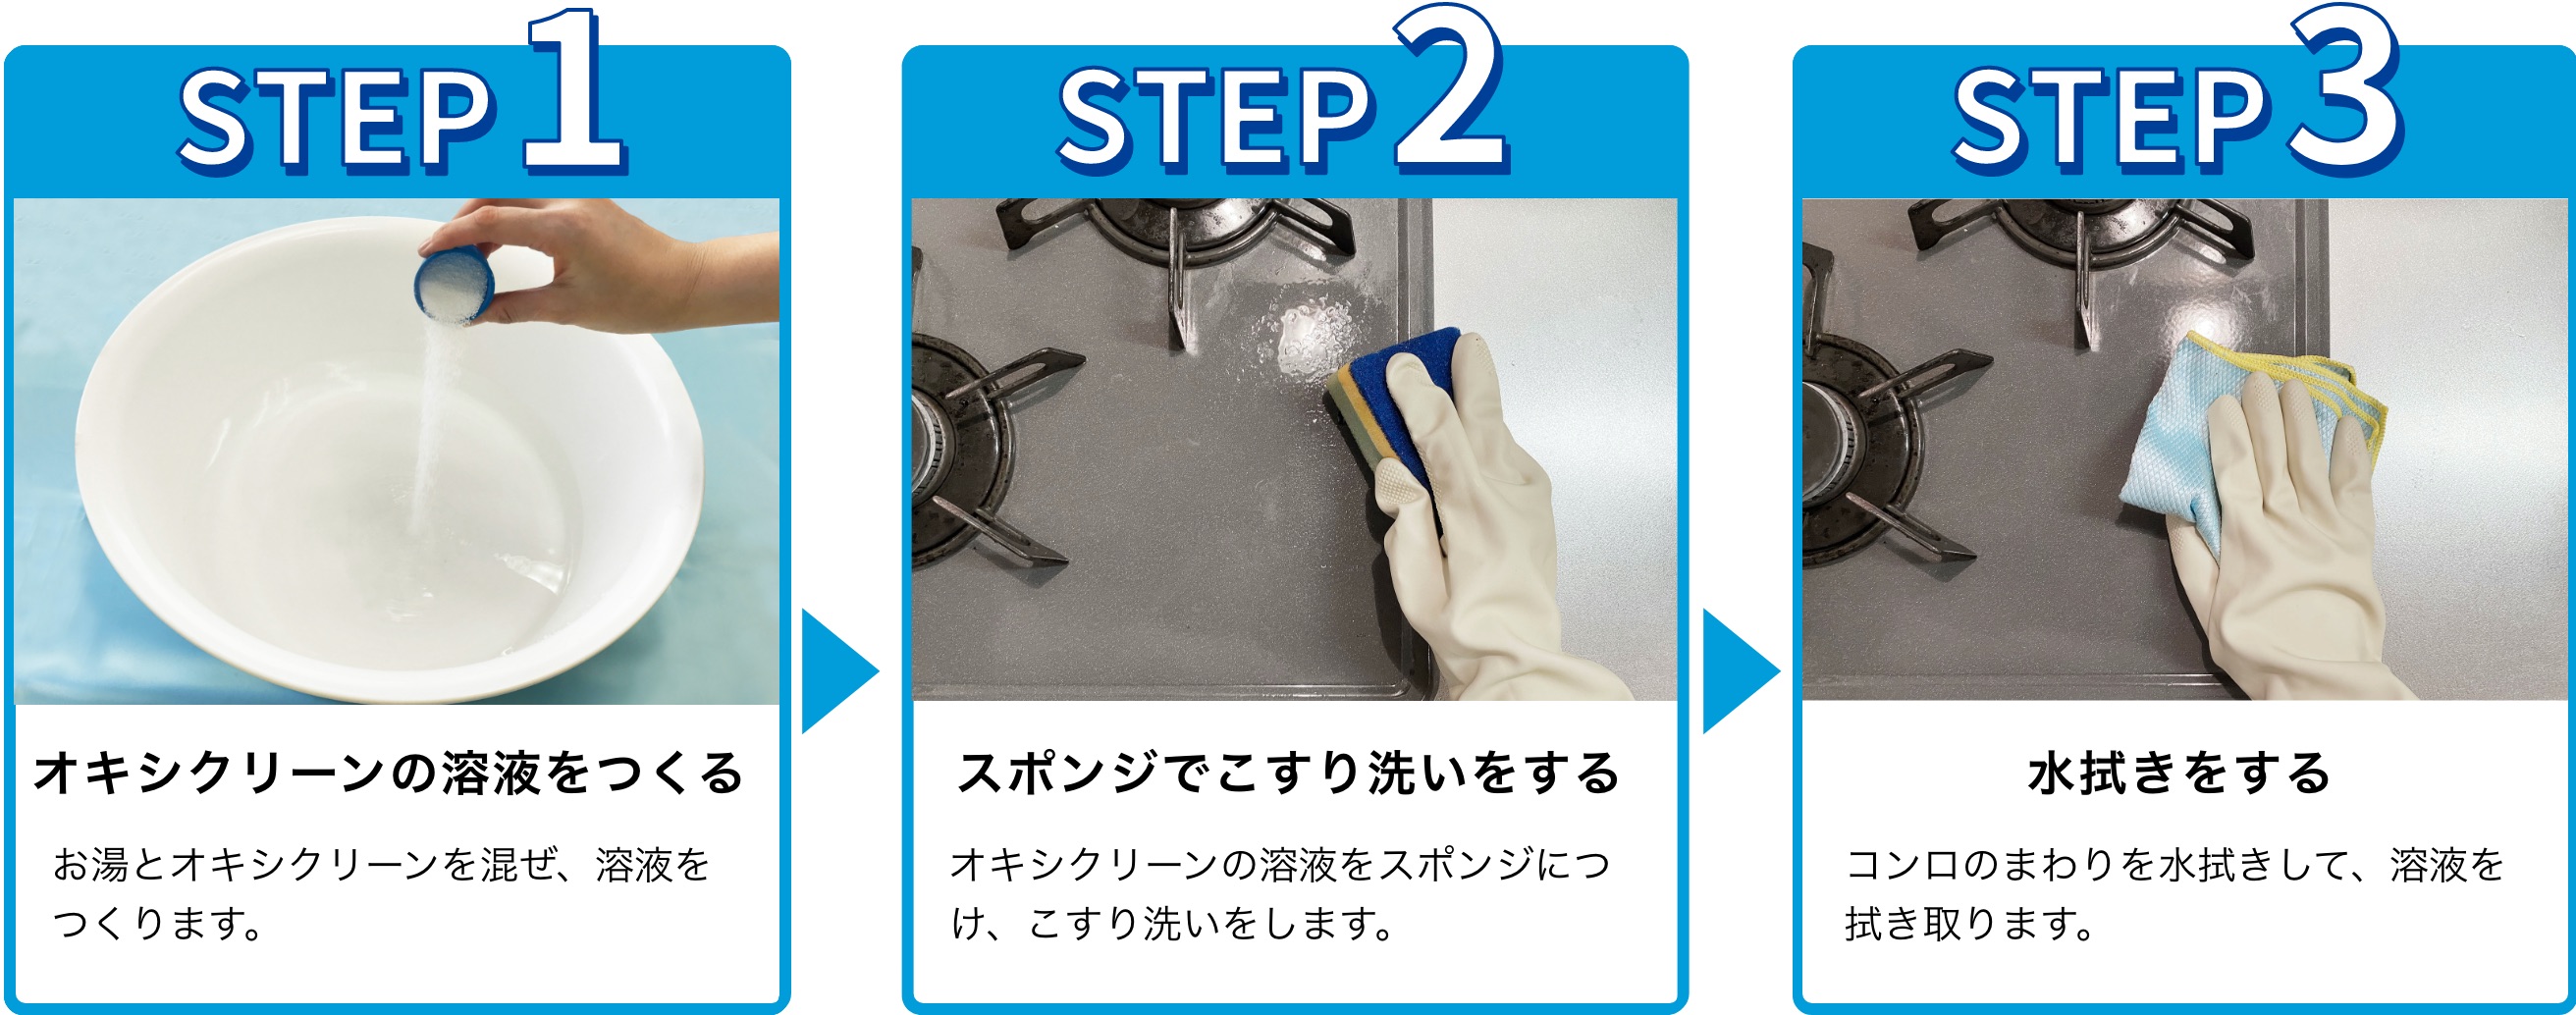 使用手順：1.オキシクリーン溶液をつくる。お湯とオキシクリーンを混ぜ、溶液をつくります。 2.スポンジでこすり洗いをする。オキシクリーンの溶液をスポンジにつけ、こすり洗いをします。3.水拭きをする。コンロのまわりを水拭きして、溶液を拭き取ります。